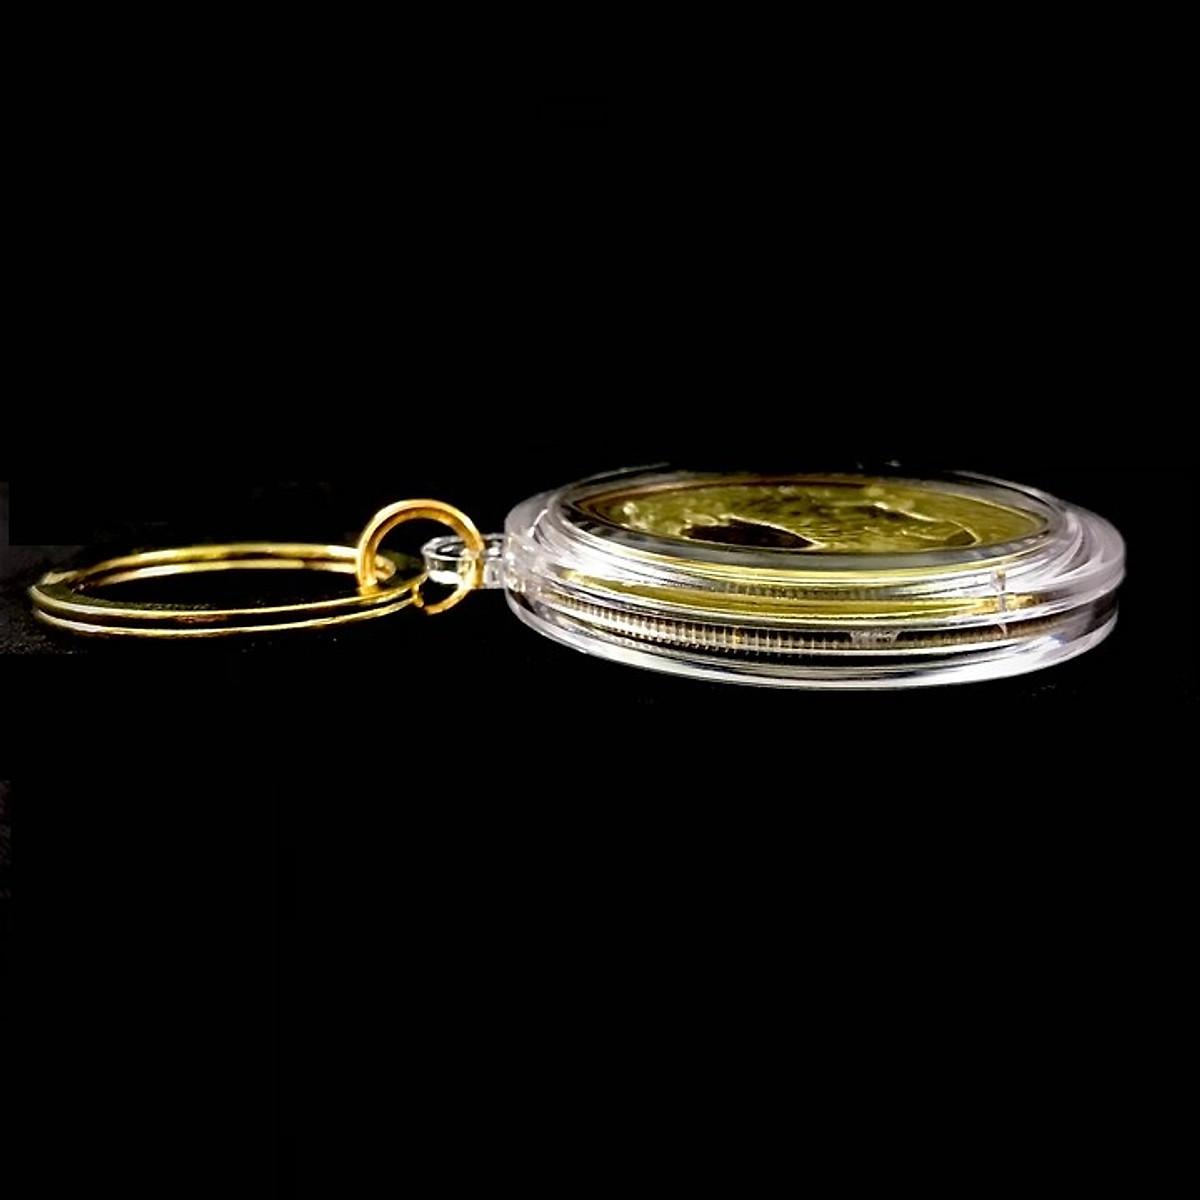 Móc Khóa Xu Úc Hình Con Cọp (Hổ) Mạ Vàng, Dùng để trang trí chìa khóa, làm quà tặng dịp Lễ, Tết